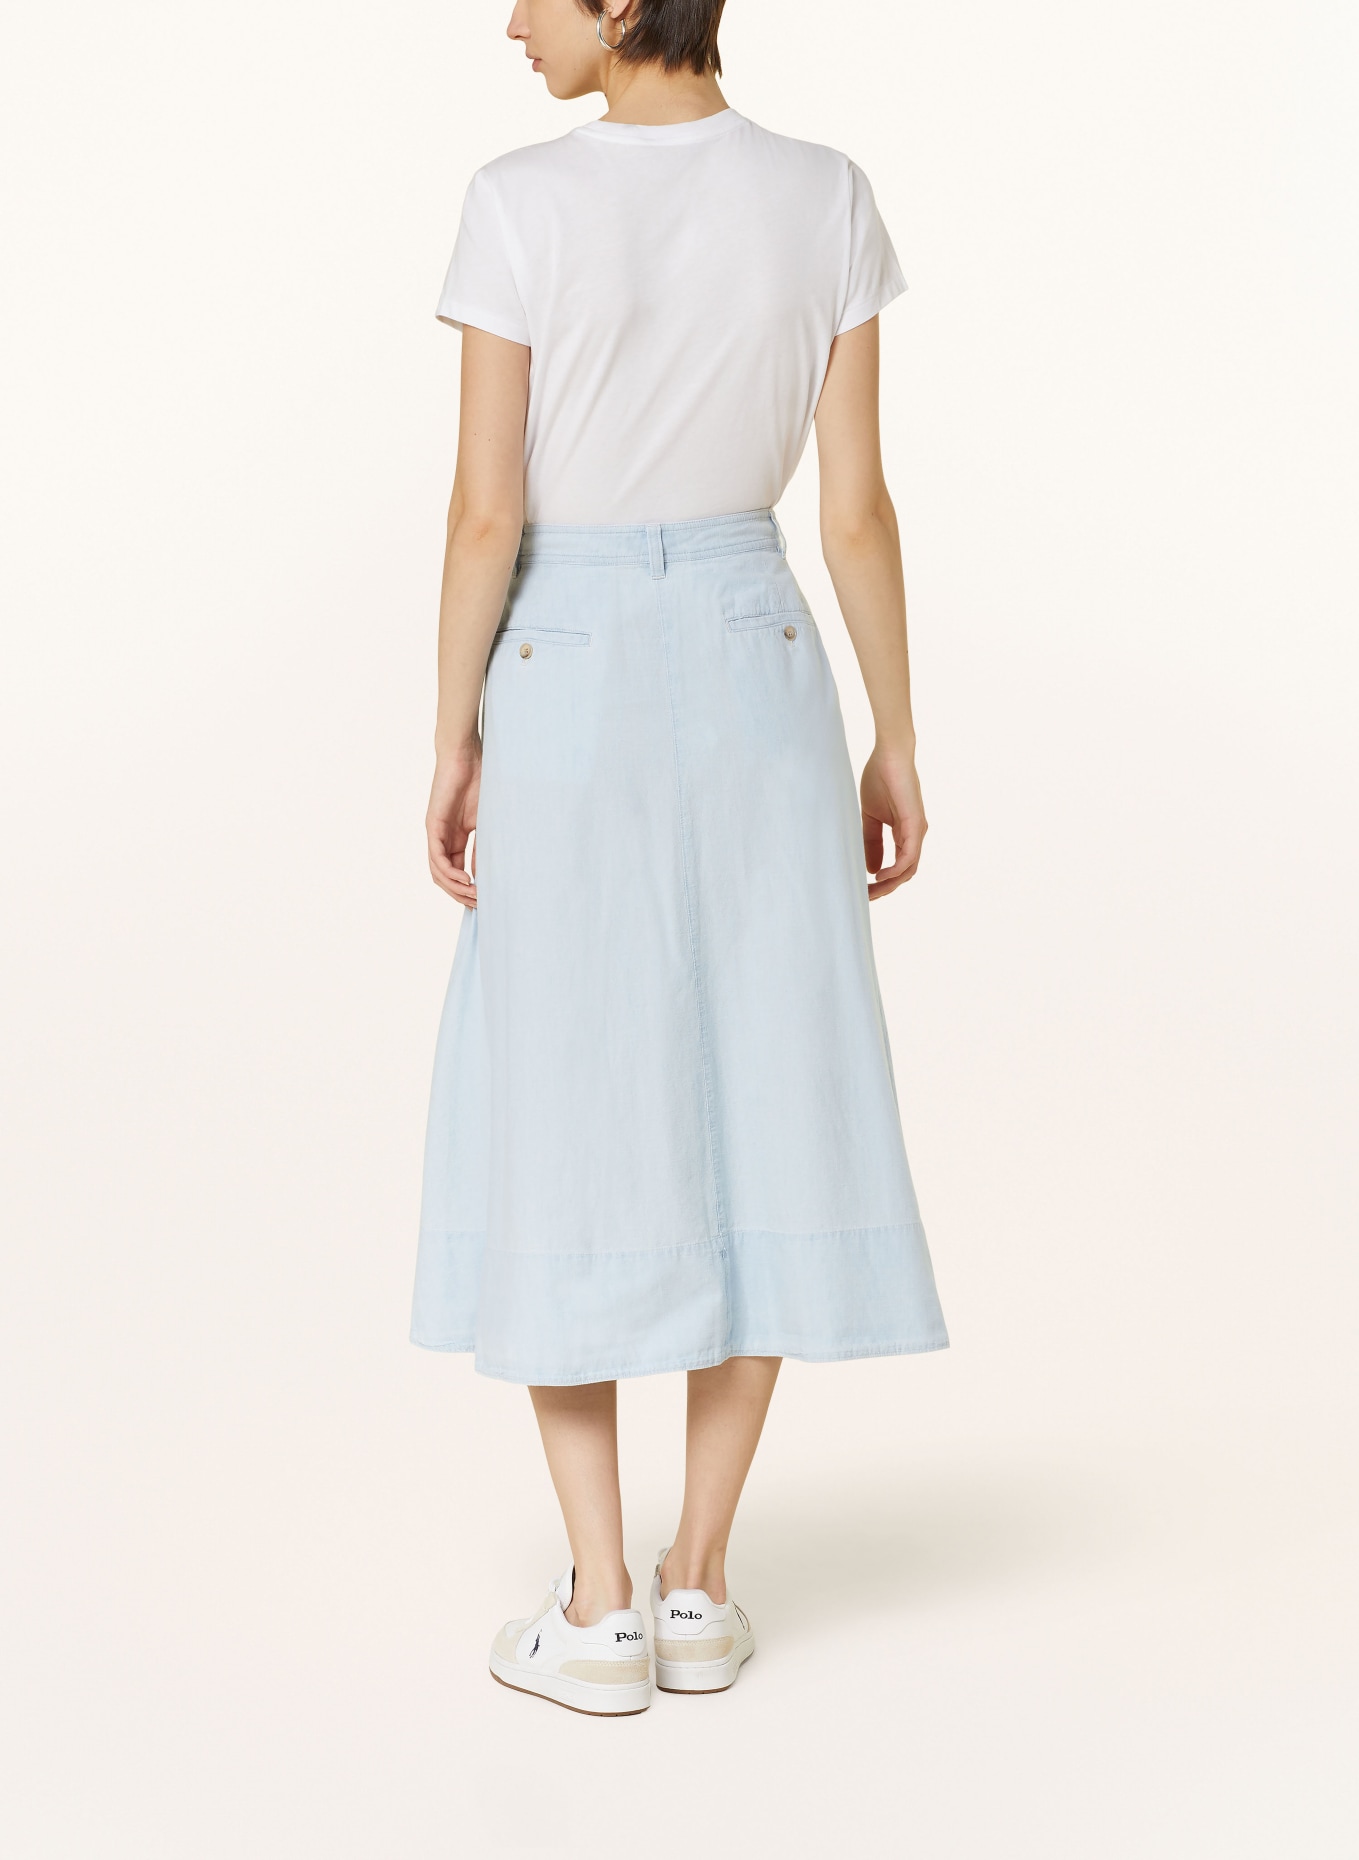 POLO RALPH LAUREN Denim skirt, Color: LIGHT BLUE (Image 3)